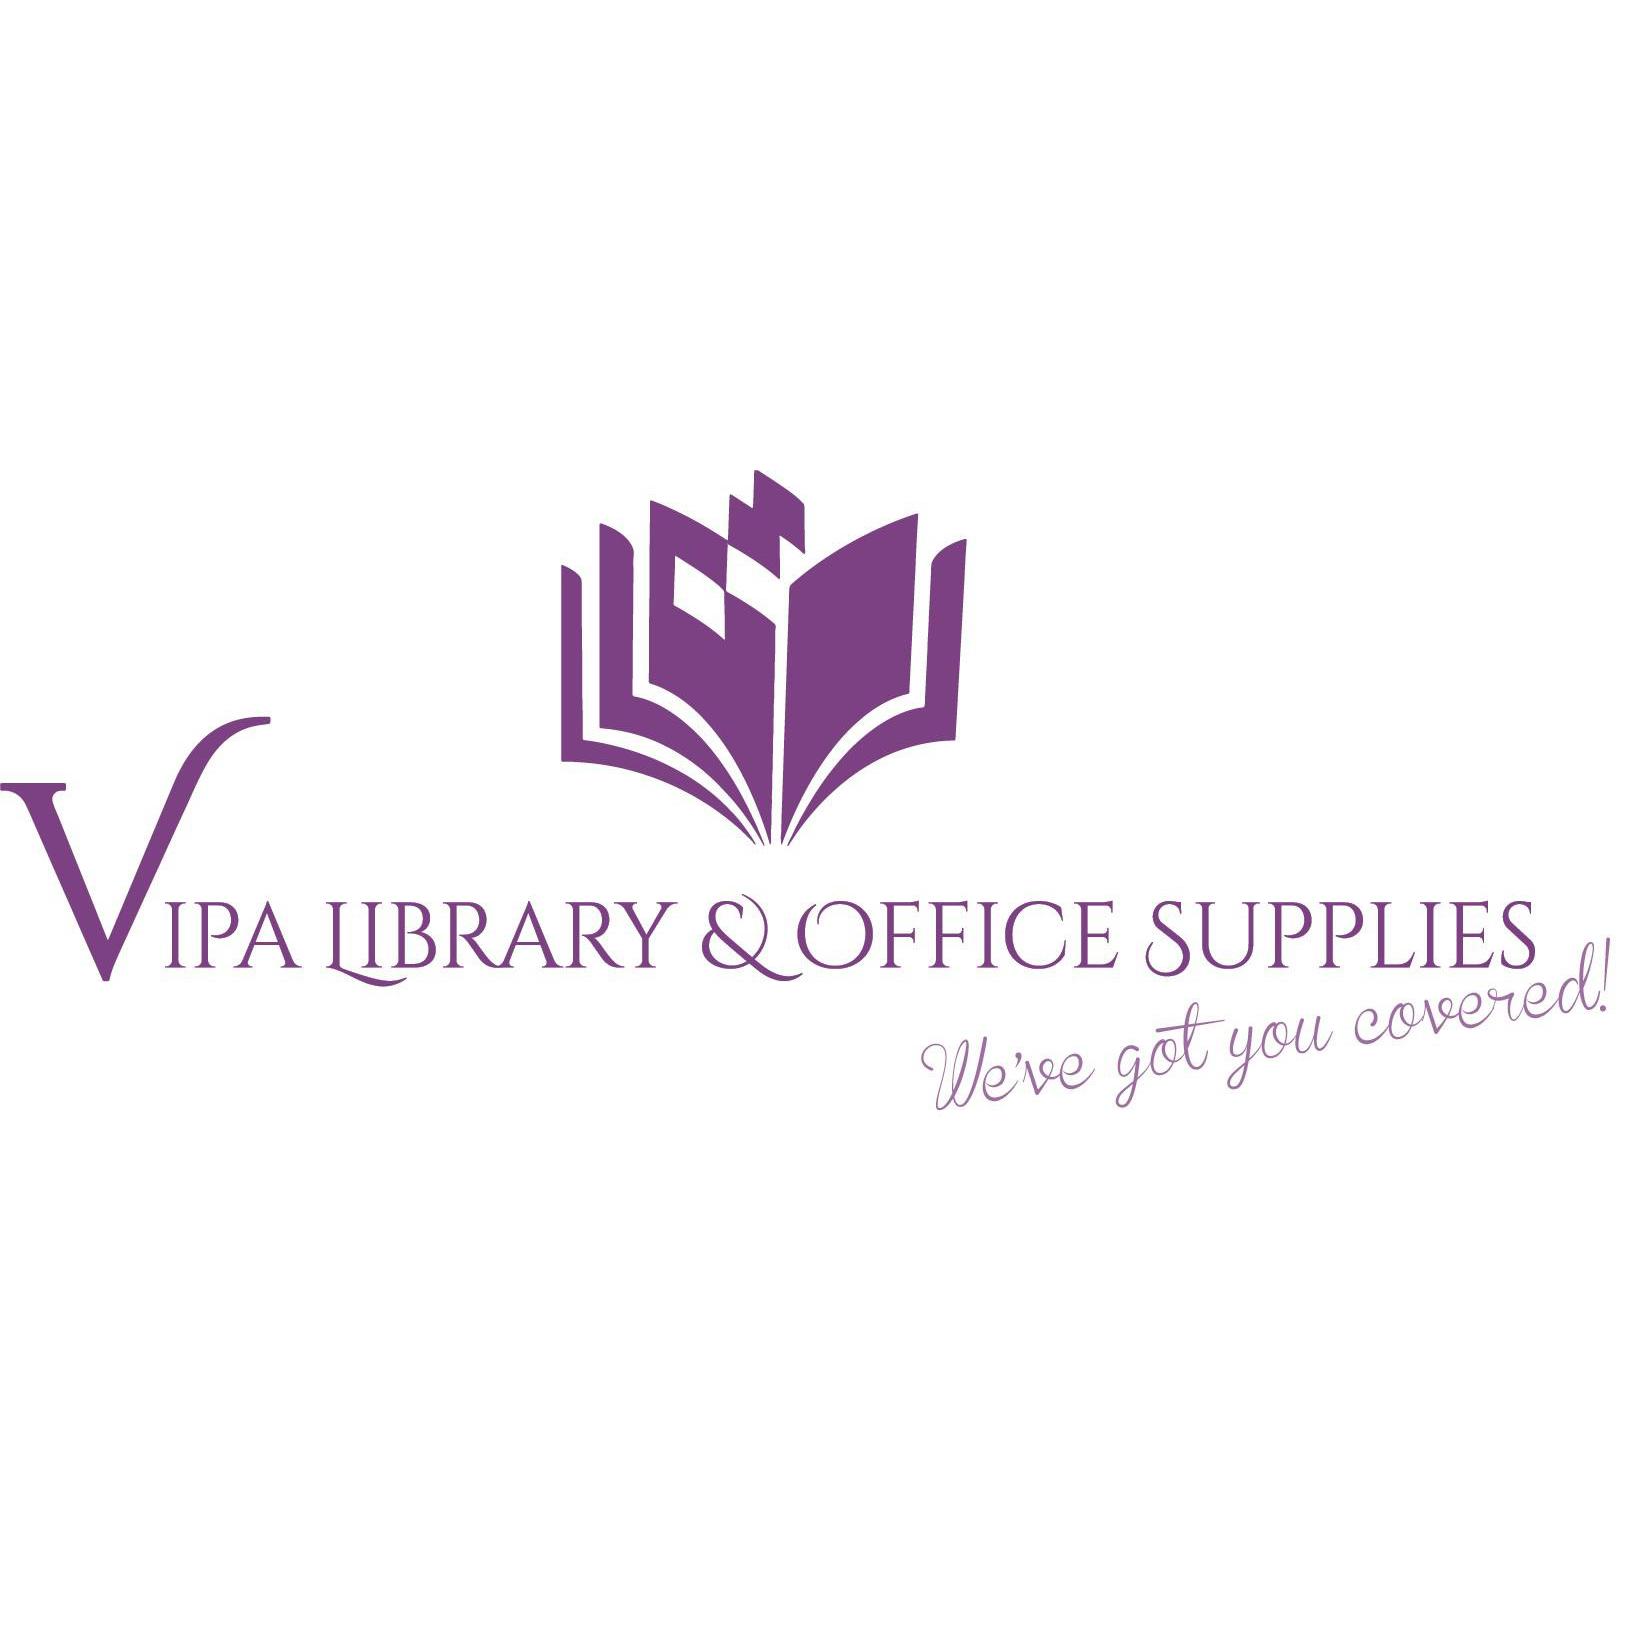 Vipa Library and Office Supplies Mornington Peninsula